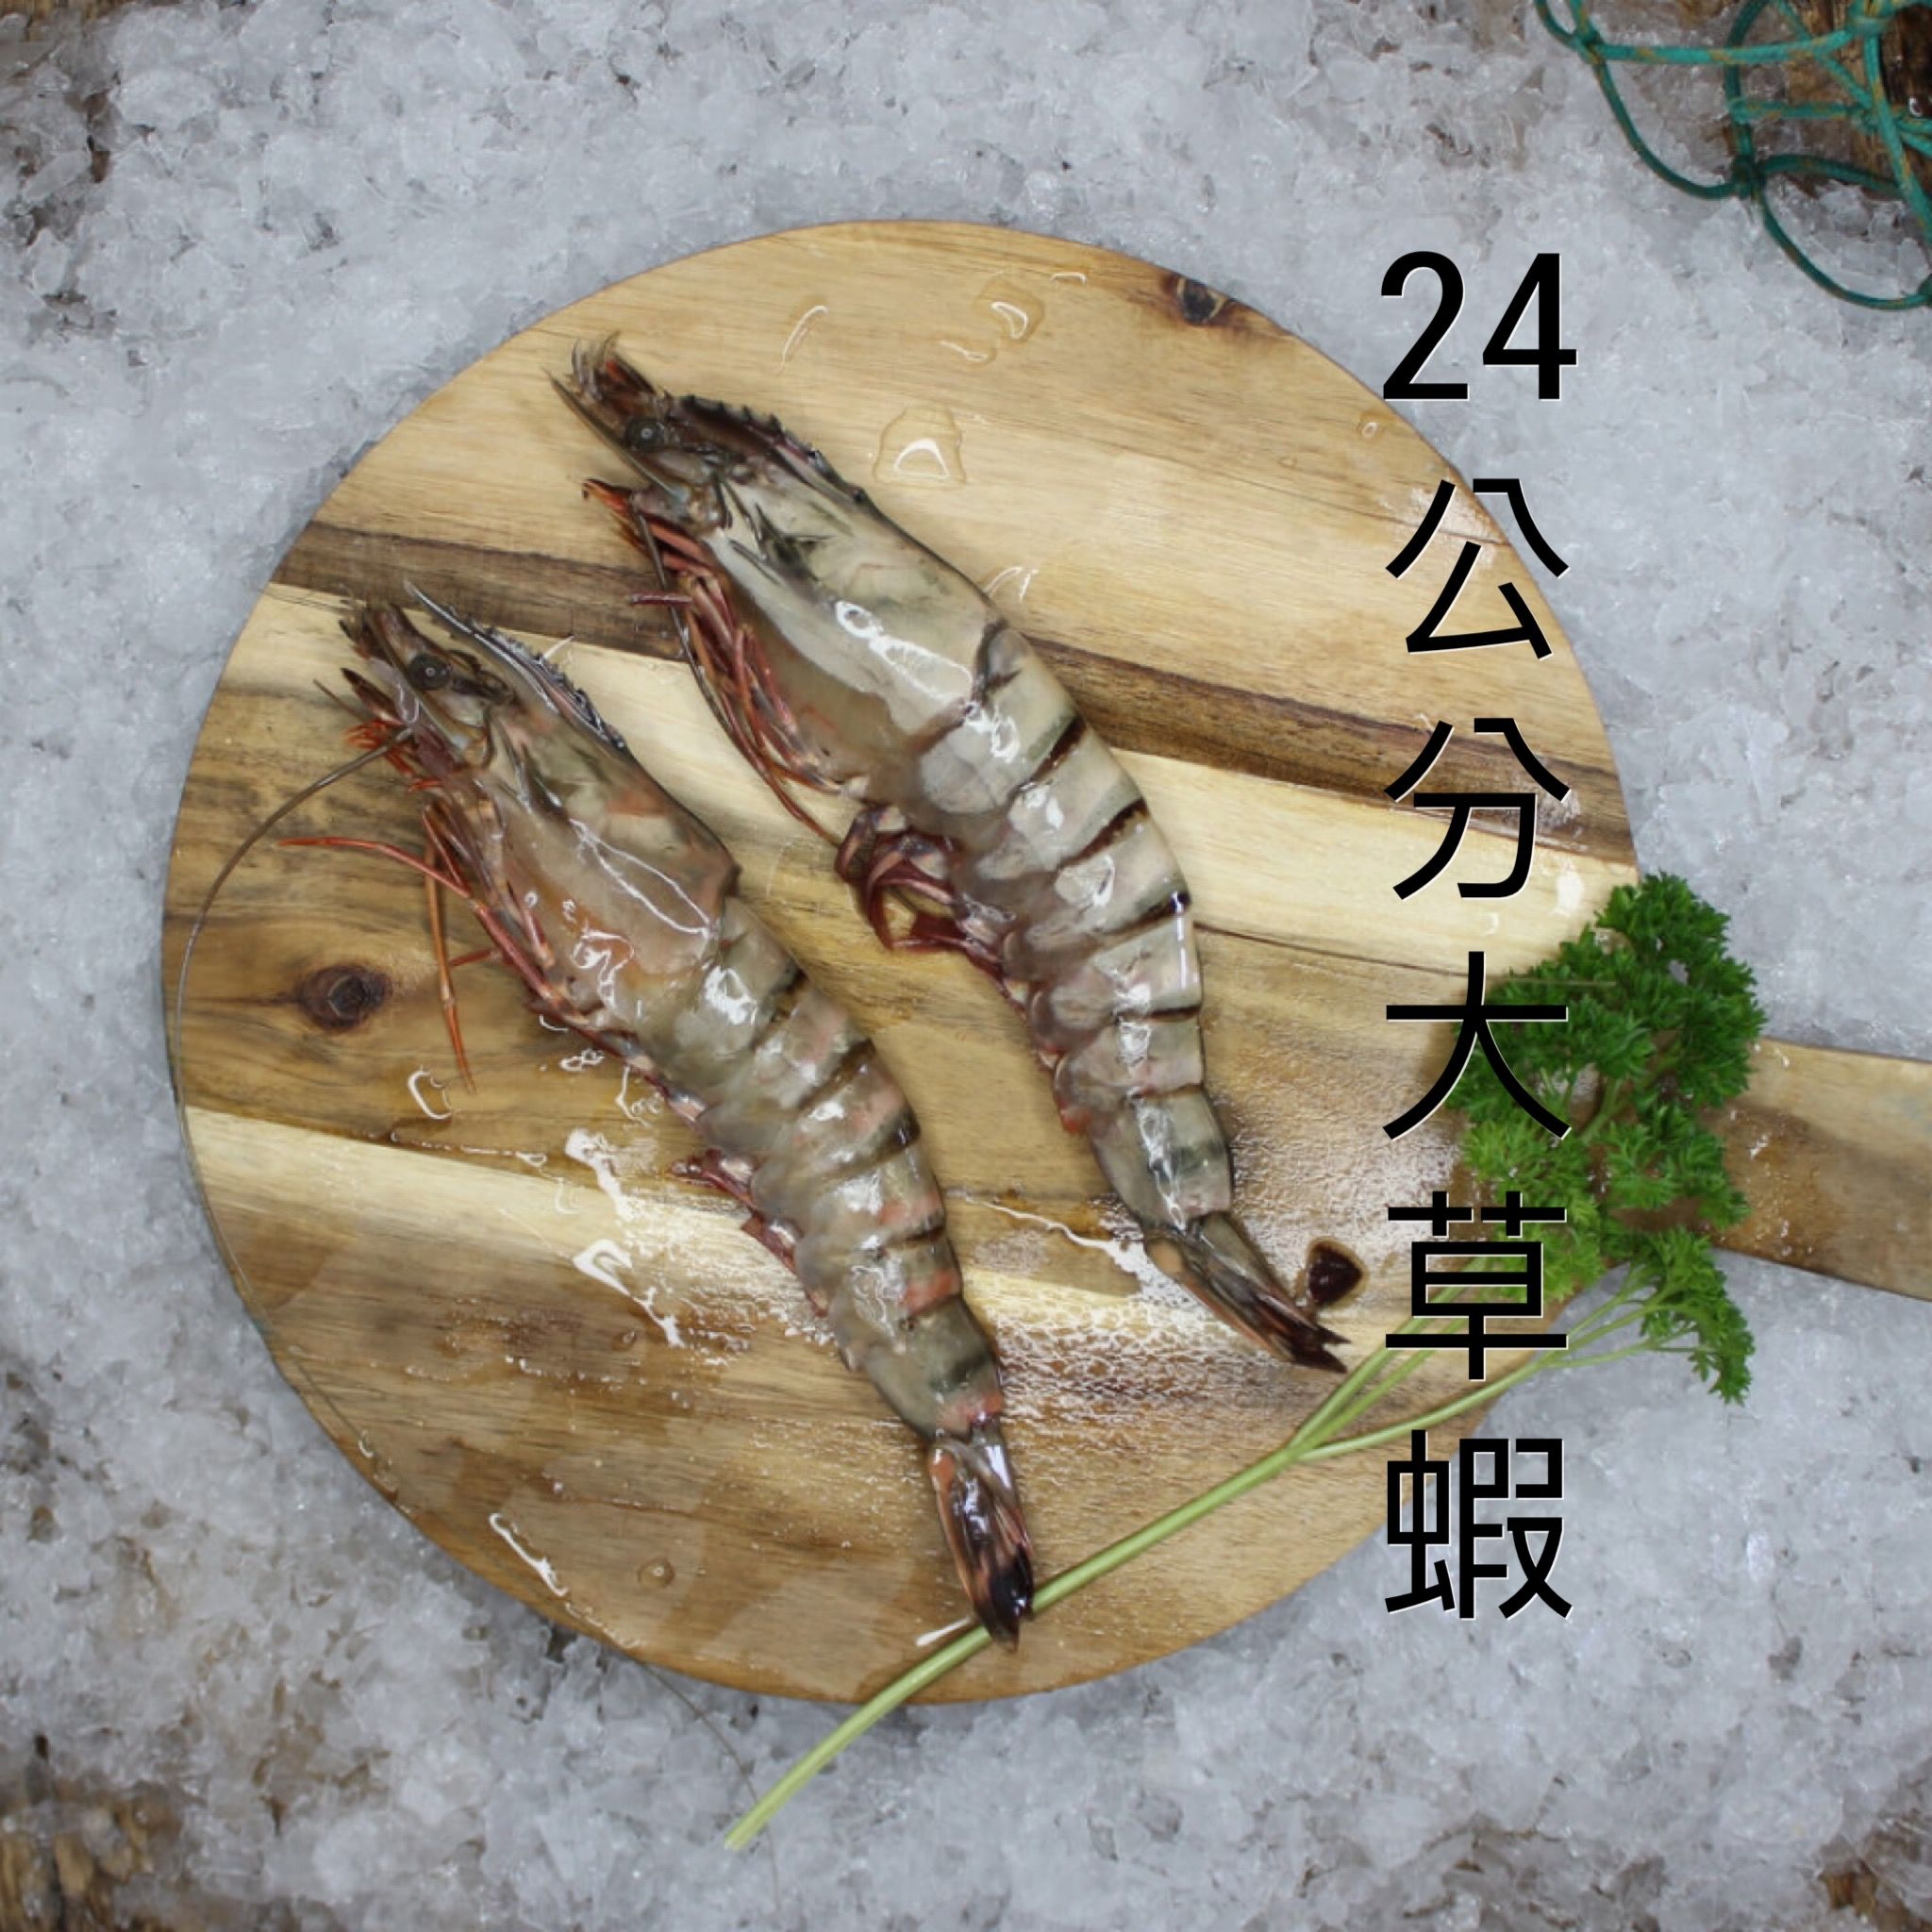 百克足重大草蝦 每包4隻 400克